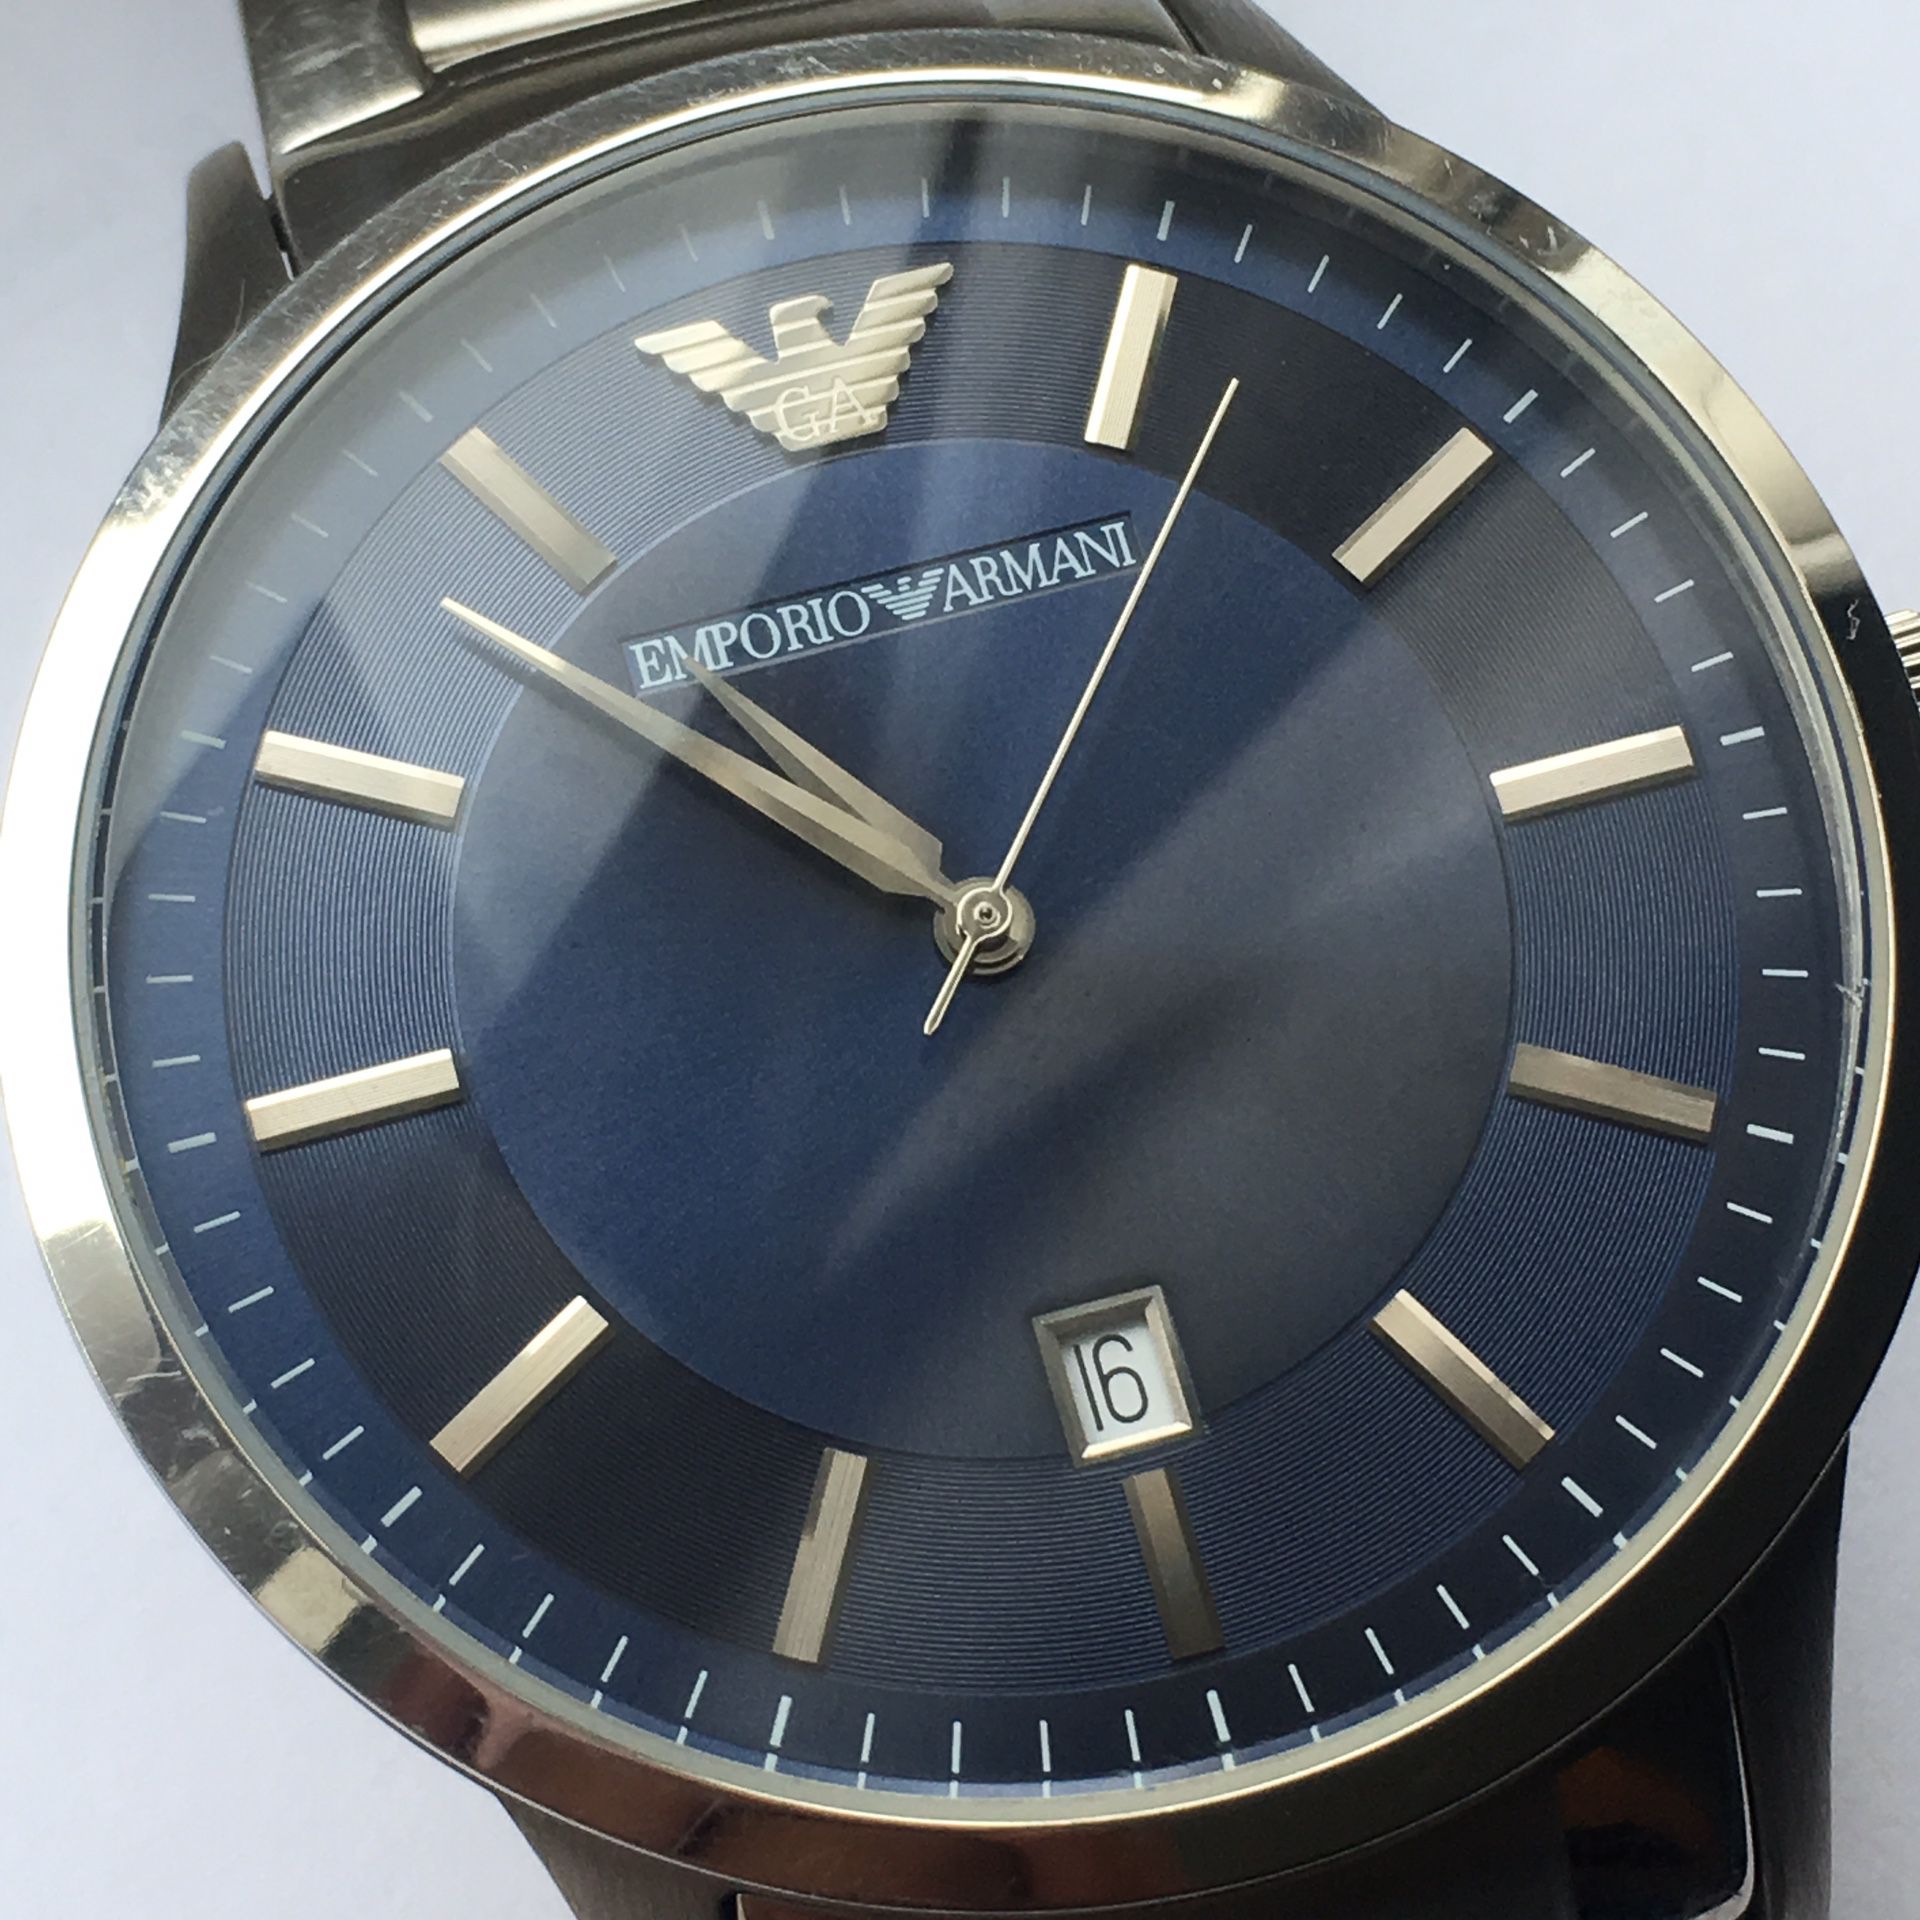 Emporio Armani Men's Renato Watch, 43mm, Silver/Blue, One Size